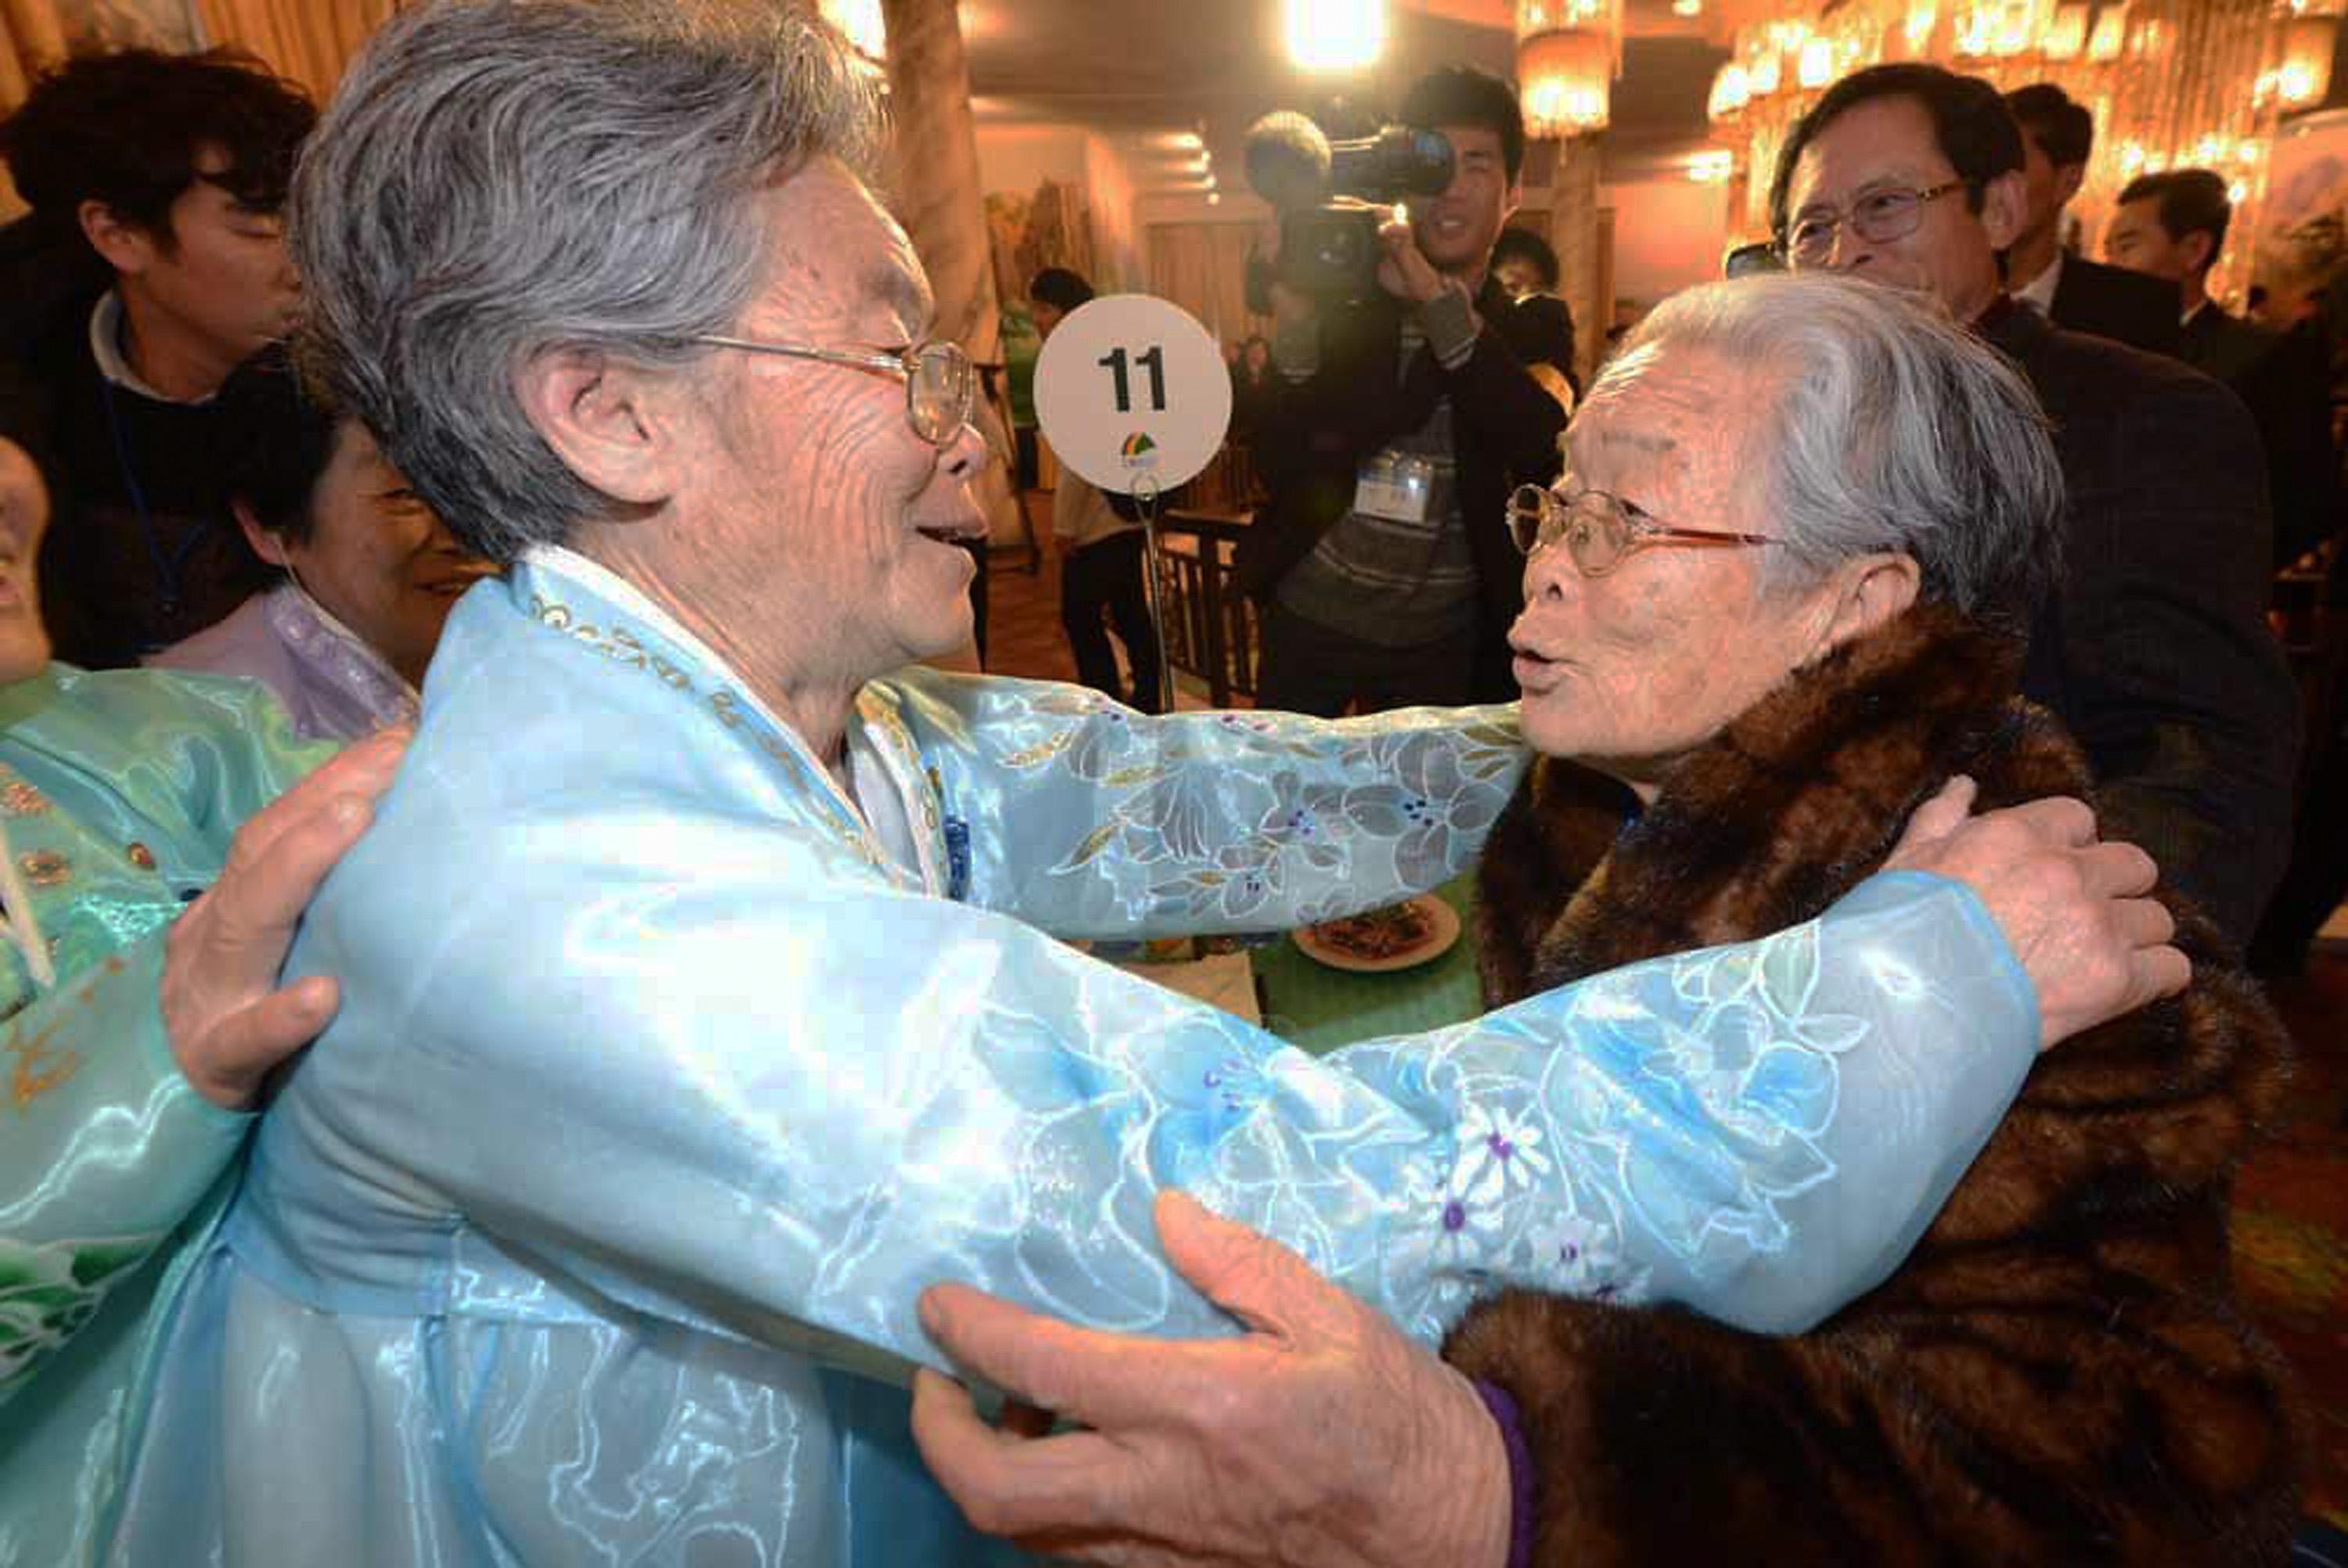 Sydkoreanska Kim Sung-Yoon, 96, (till höger) träffar sin nordkoreanska syster vid en familjeåterförening i Nordkorea den 20 februari 2014. De hade inte träffats på 60 år. (Foto: Fotografpool /Getty Image)